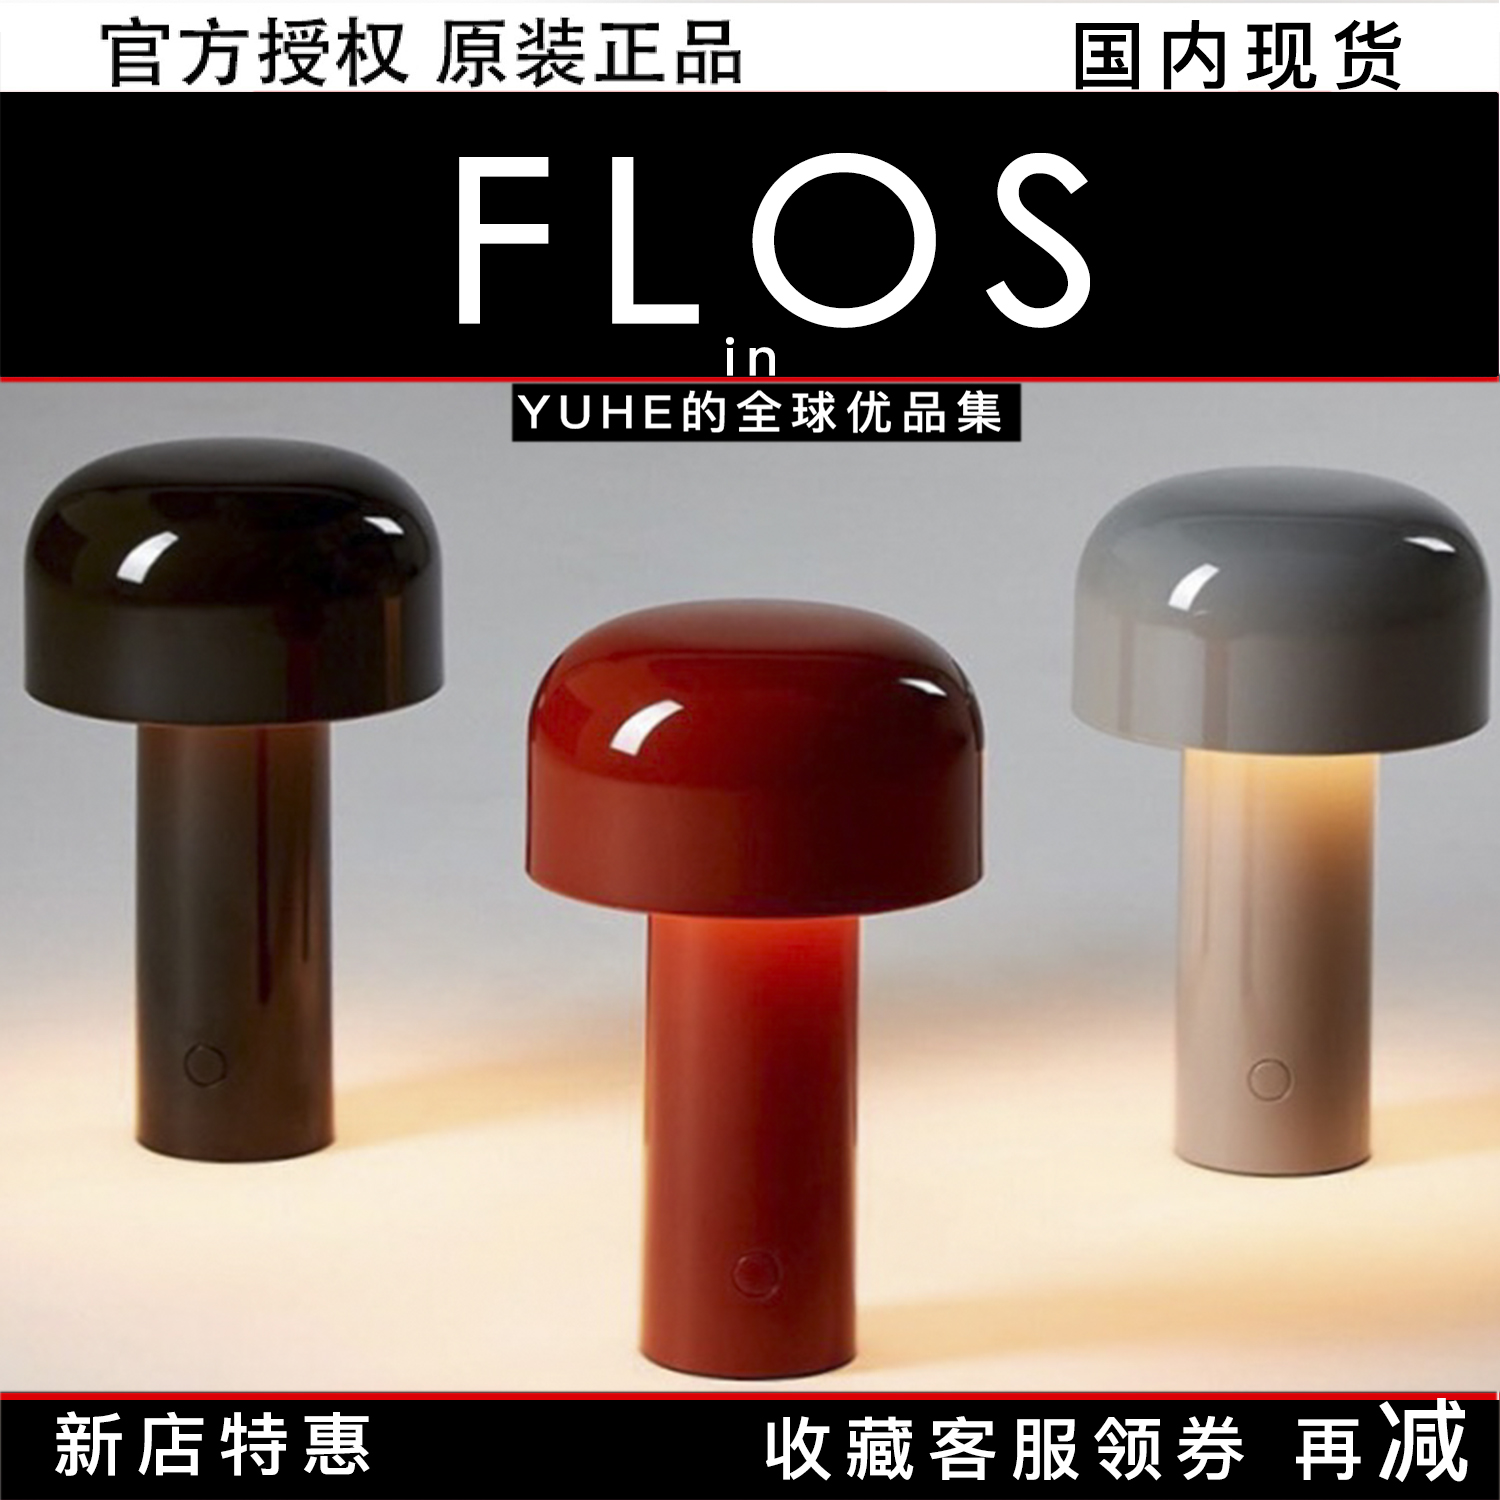 【官方正品】意大利FLOS蘑菇灯Bellhop可充电便携式USB充电台灯潮